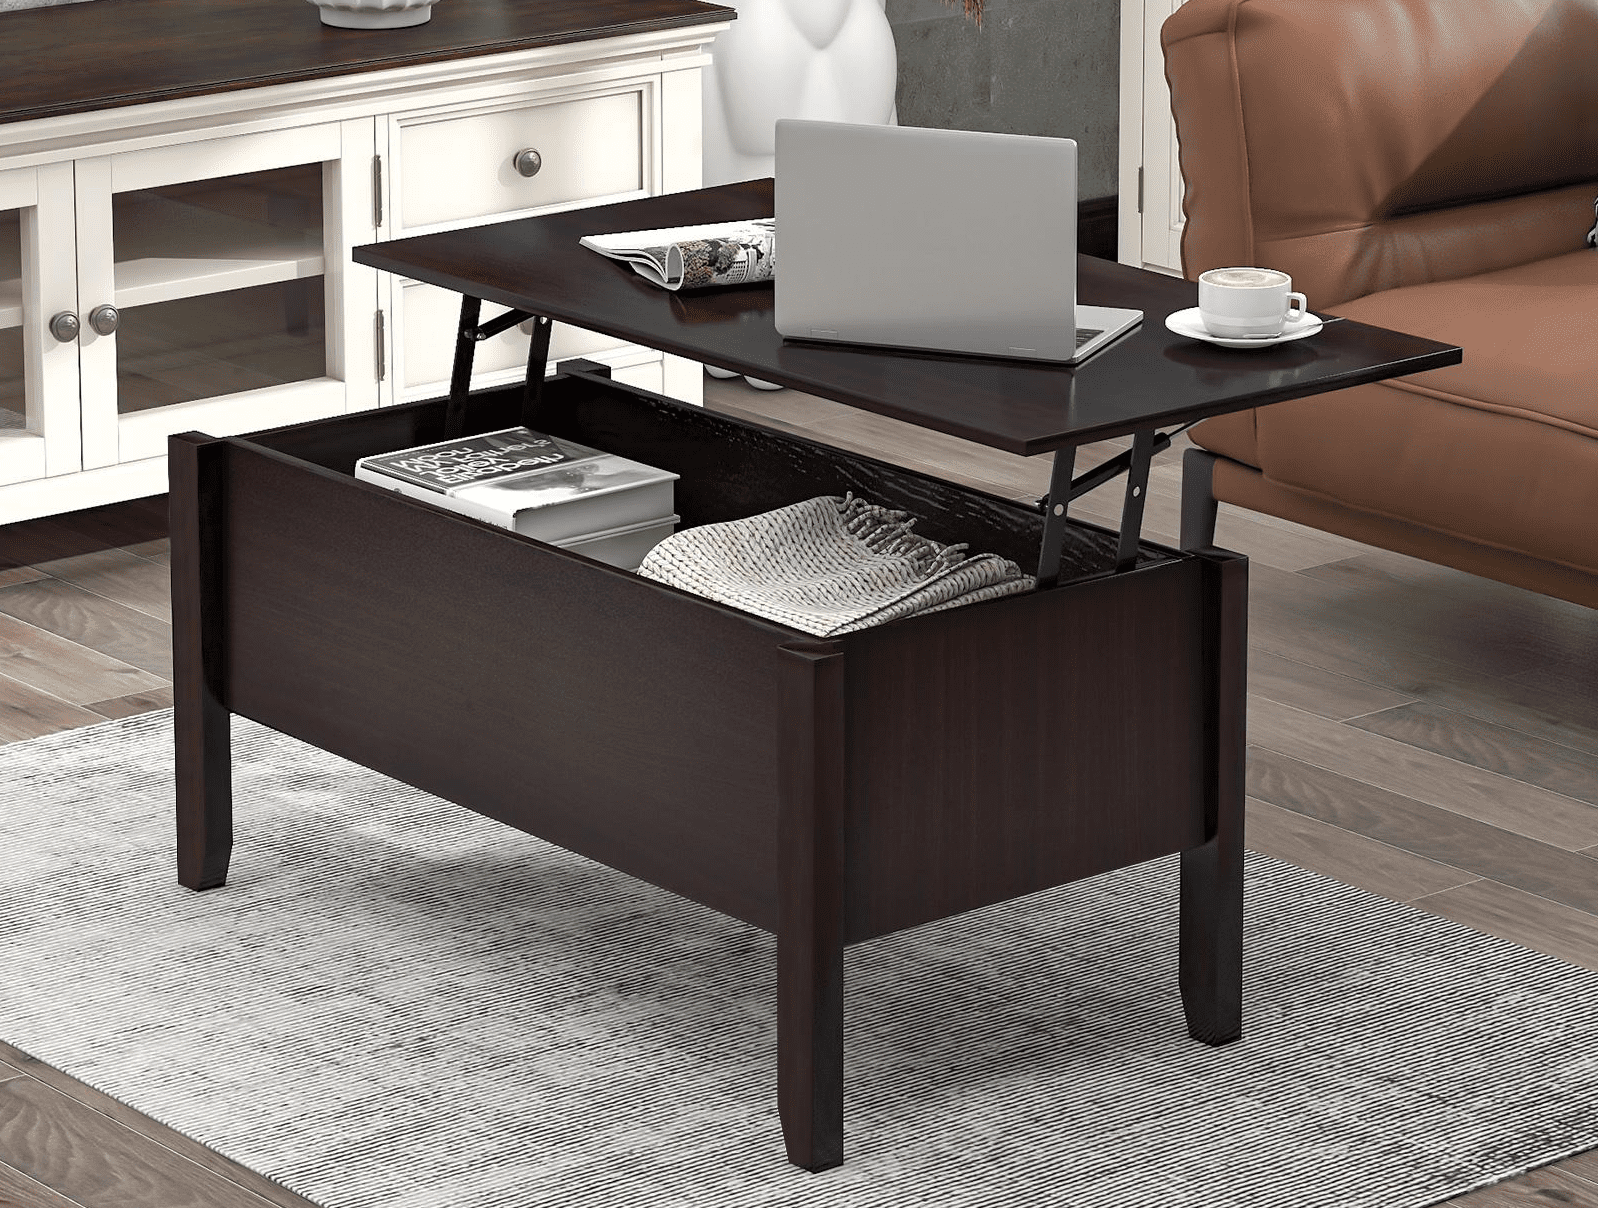 Details about   Laptop Desk Stand Bed Flip Top Drawer Tray Alden Foldable Storage Adjustable New 